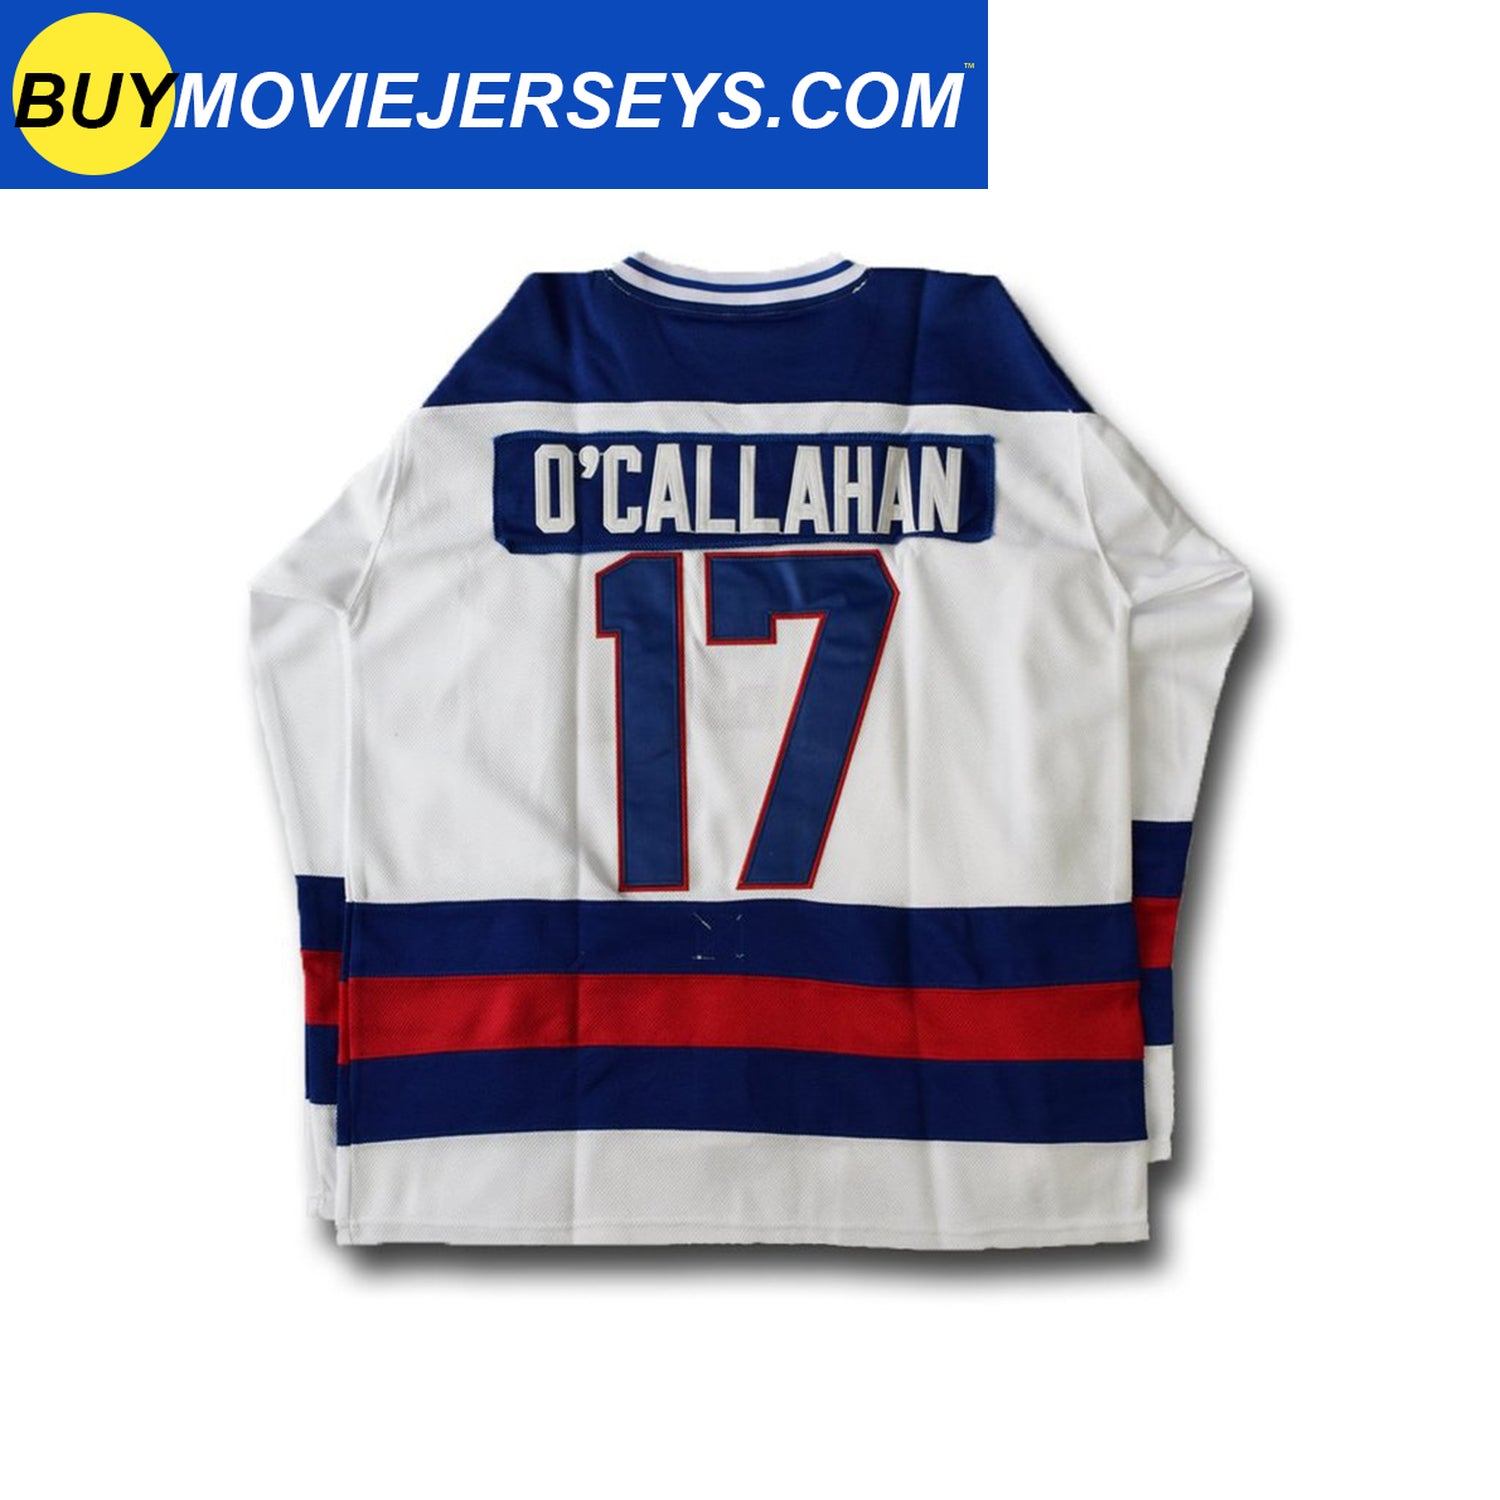 Jim Craig #30 USA Hokcey Jersey  Jim craig, Hockey jersey, Jersey